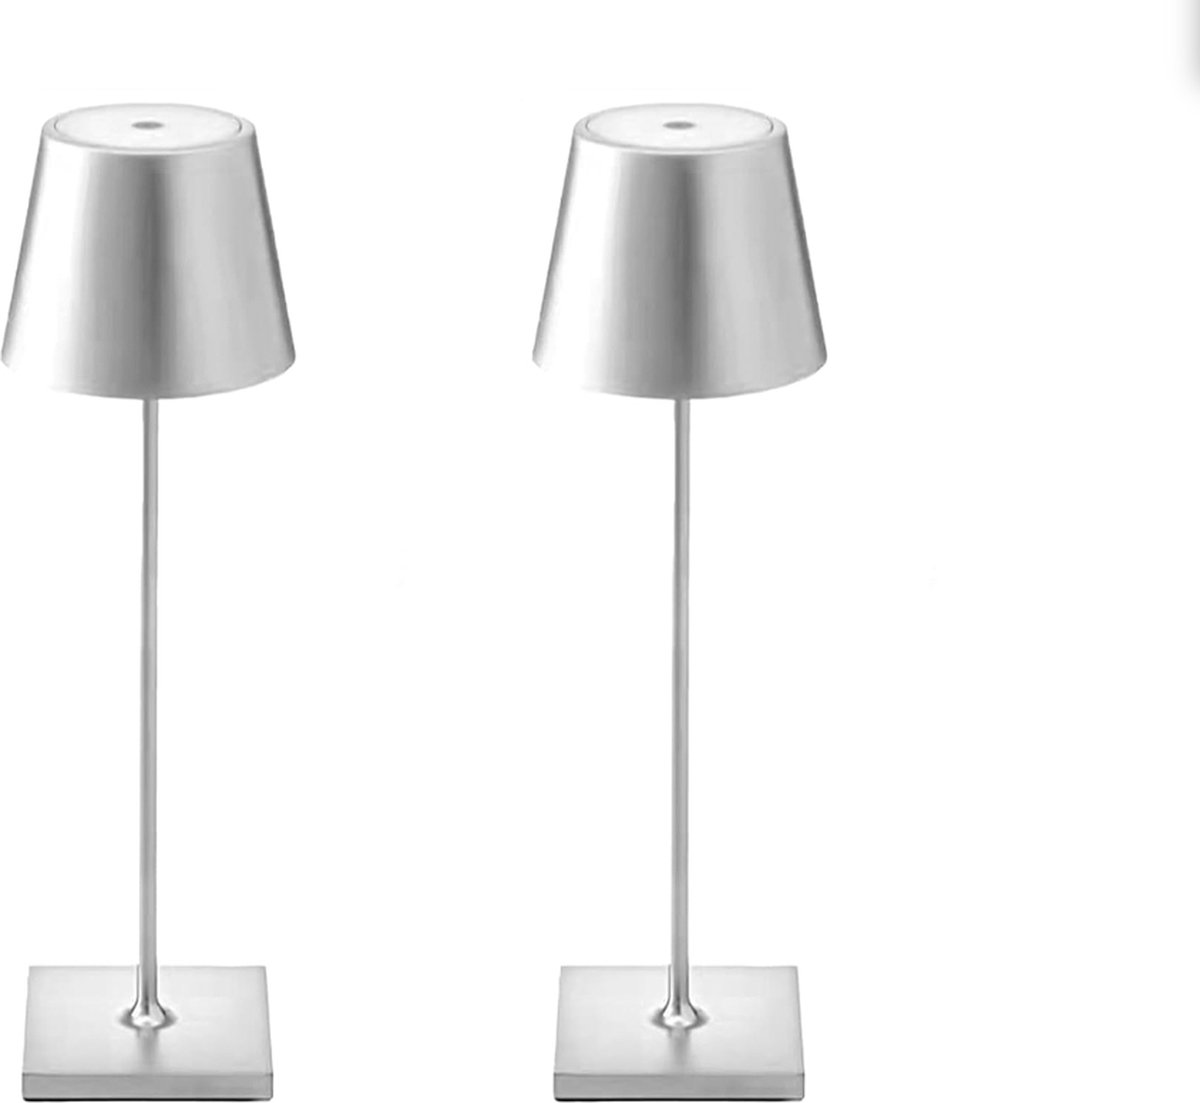 Oplaadbare Tafellampen - 2 Stuks - Zilver - LED - Dimbaar - Oplaadbaar - Bureaulamp - 3W 5500mAh Batterij - Binnen/Buiten - IP54 - Waterdicht